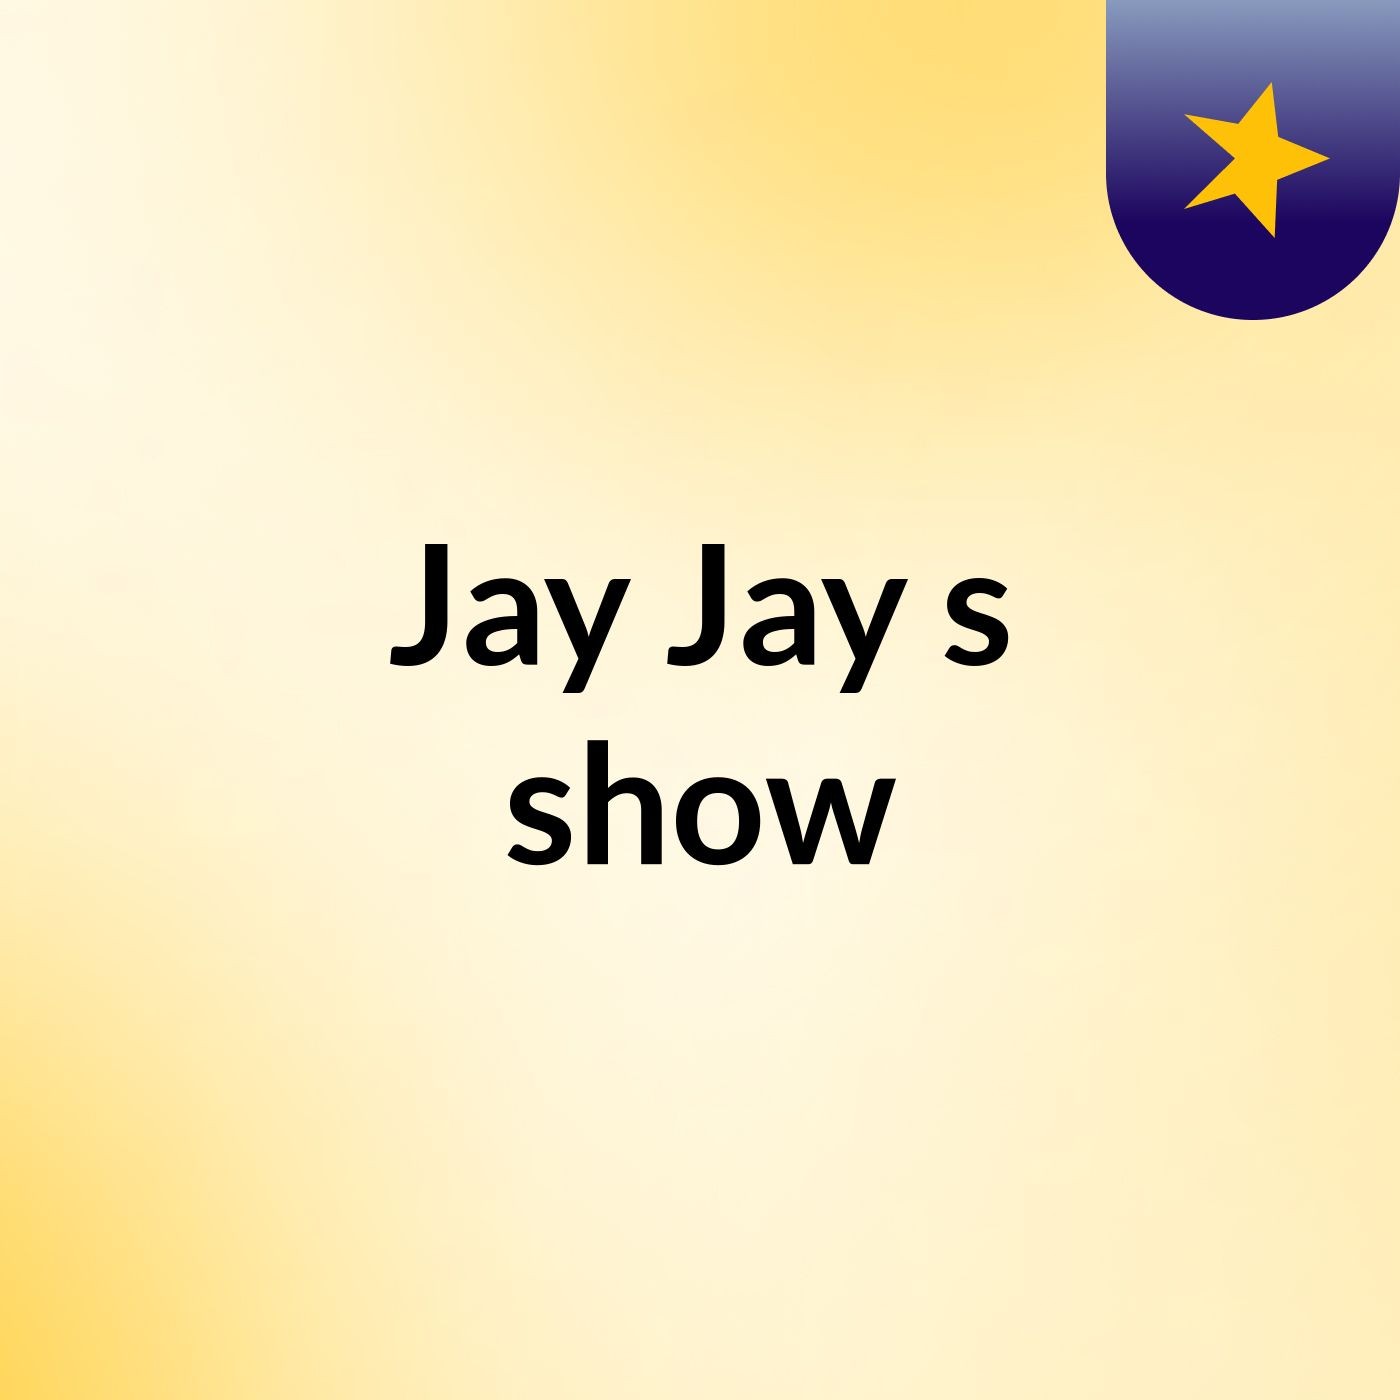 Jay Jay's show